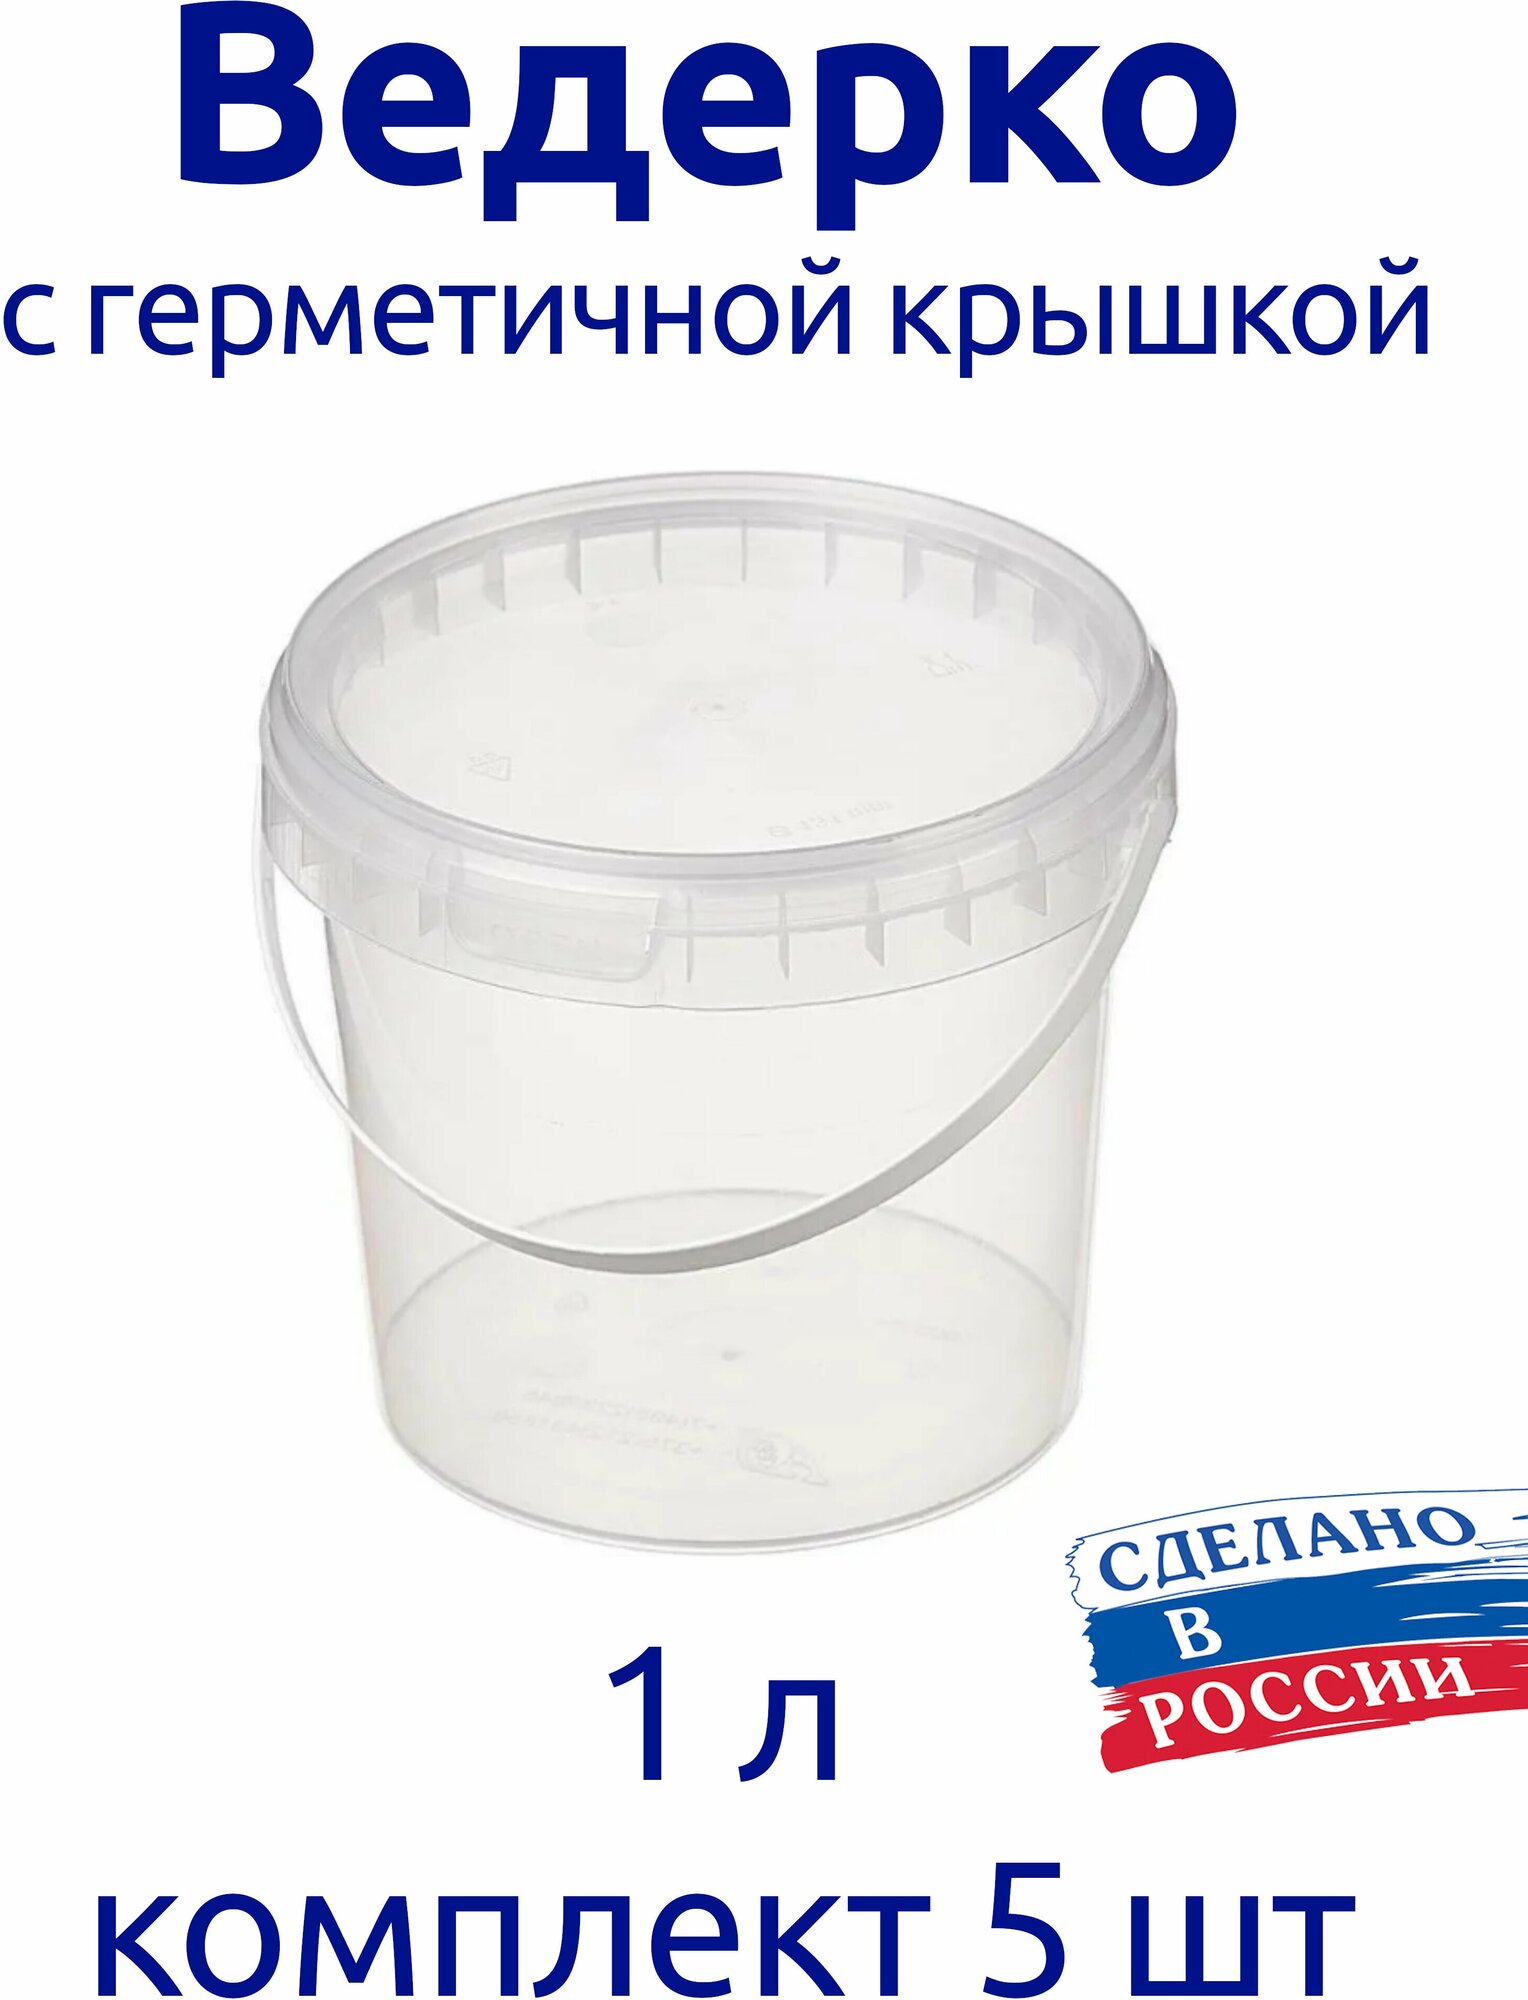 Ведерко 1л пищевое с герметичной крышкой для меда для ягод комплект 5 шт.